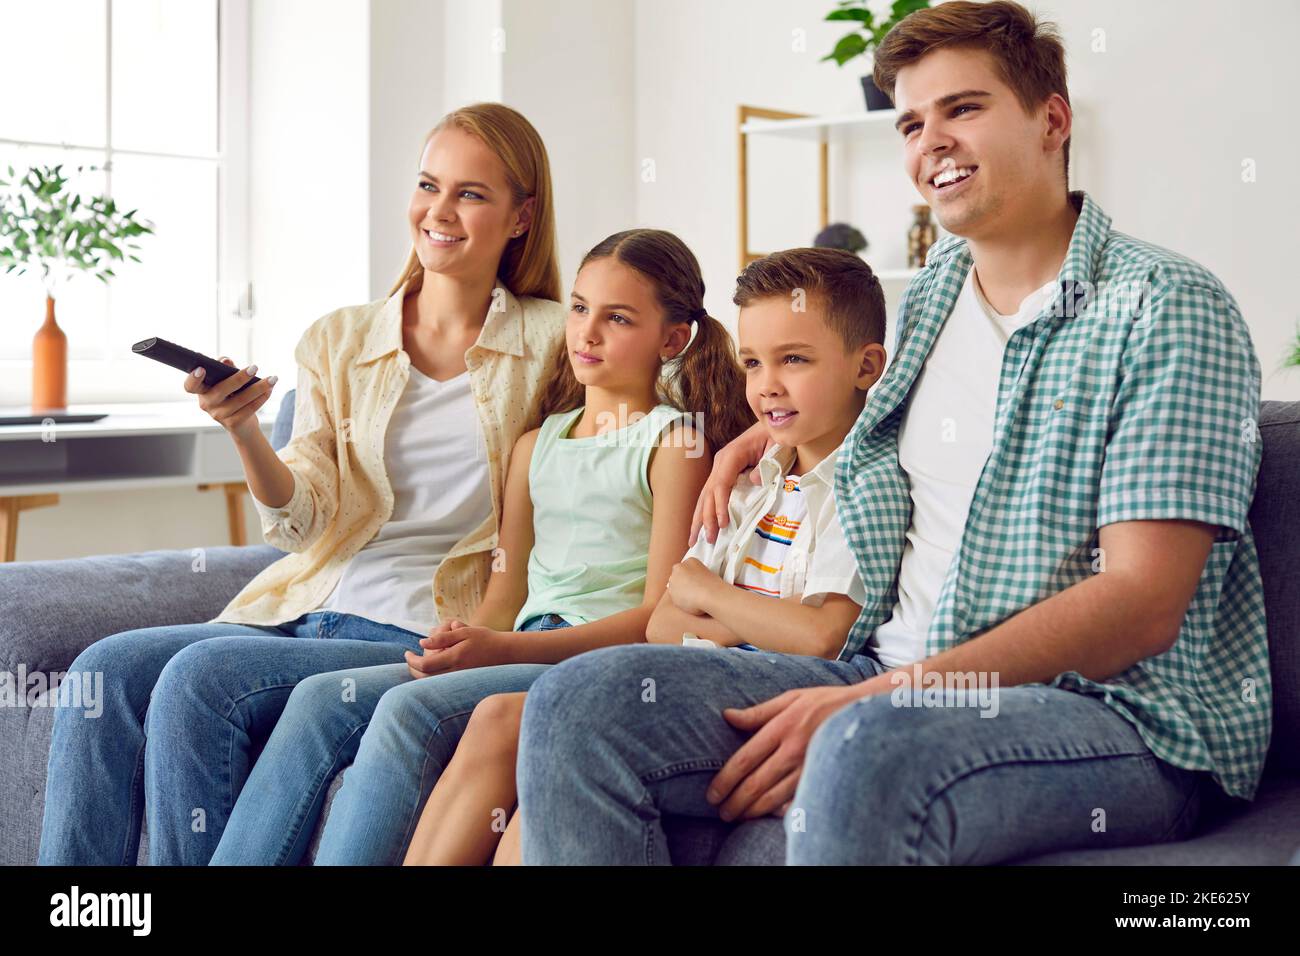 La famiglia giovane e allegra con i bambini si rilassa guardando i programmi televisivi insieme. Foto Stock